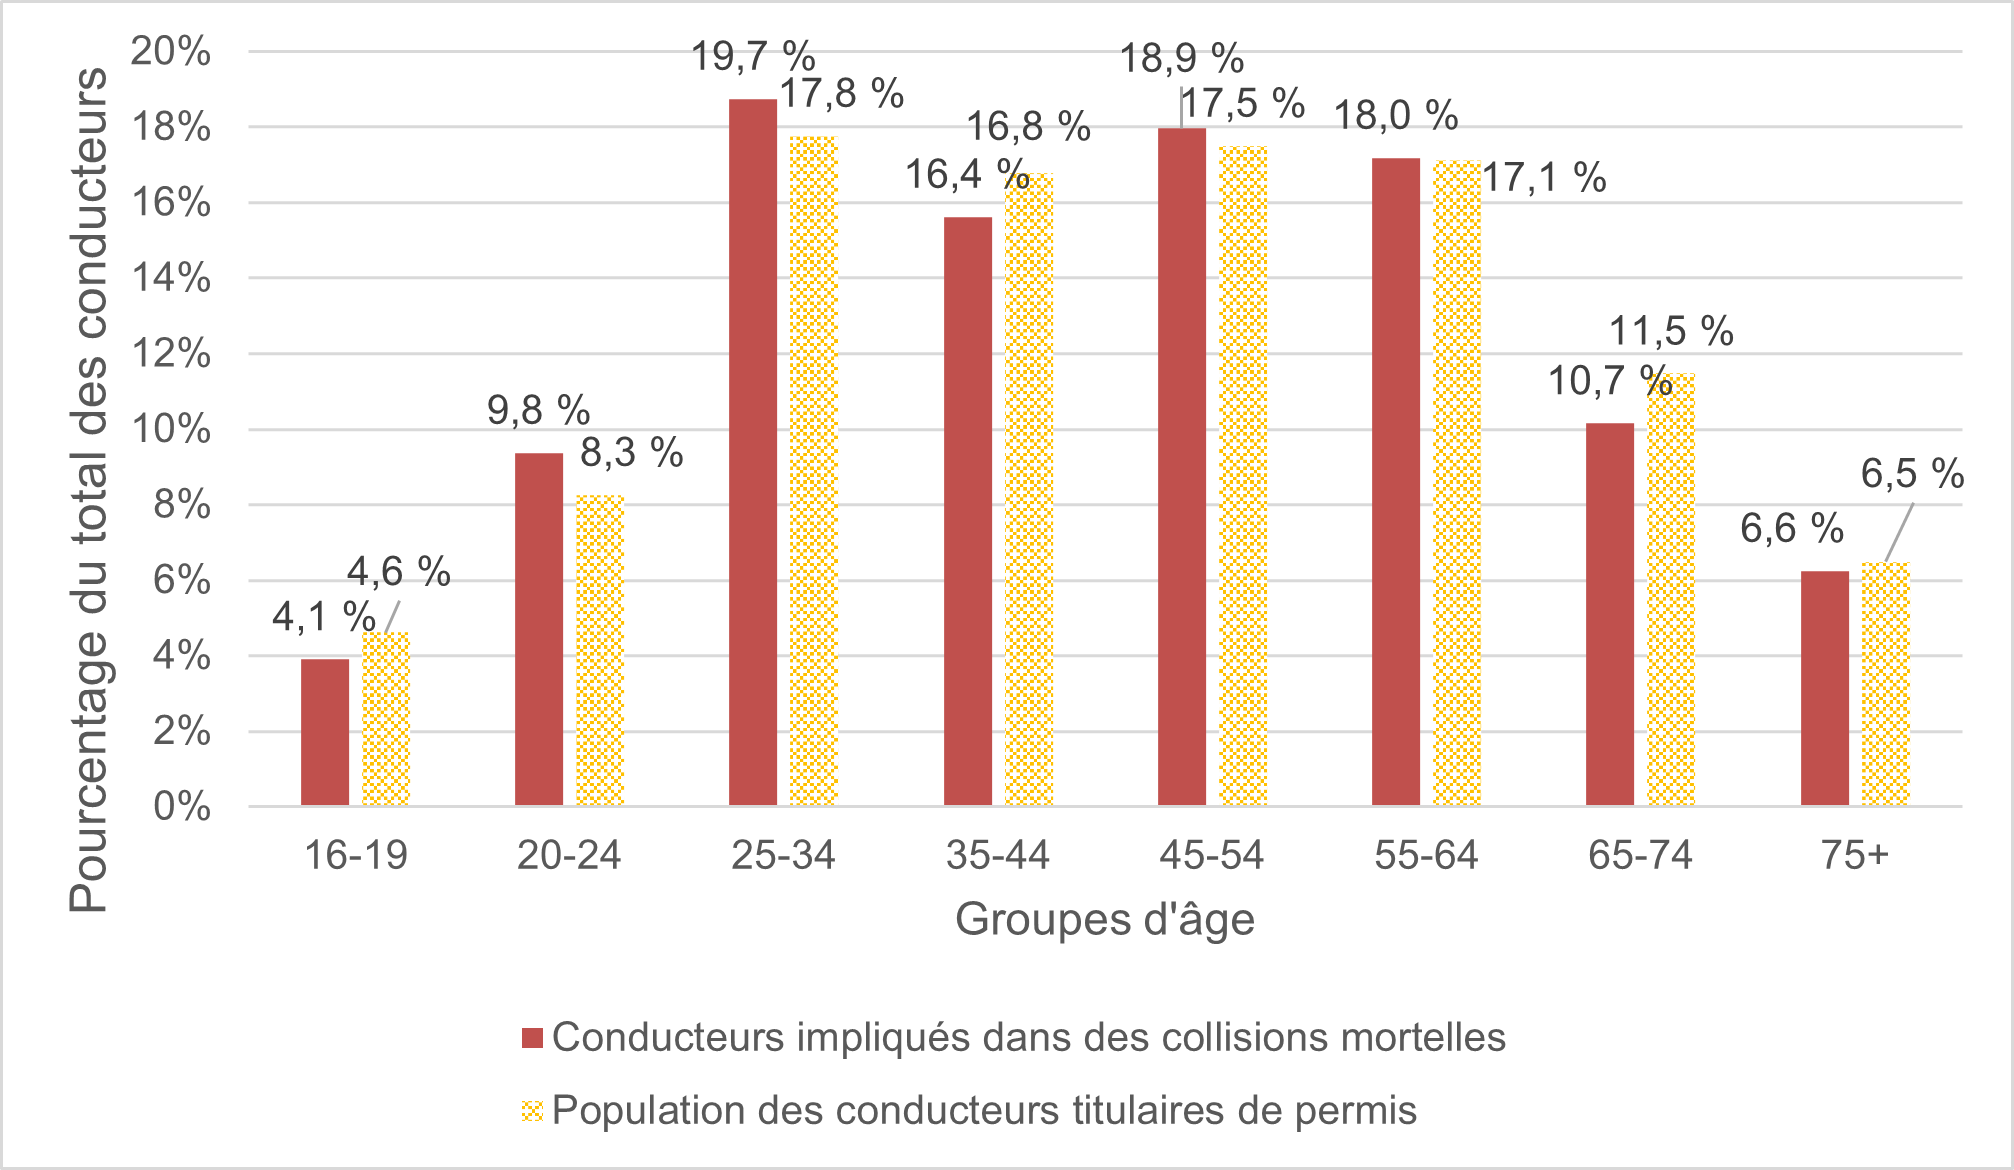 Figure 16 compare le pourcentage des 128 conducteurs impliqués dans des collisions mortelles par groupe d’âge aux conducteurs titulaires de permis dans chaque groupe d’âge.